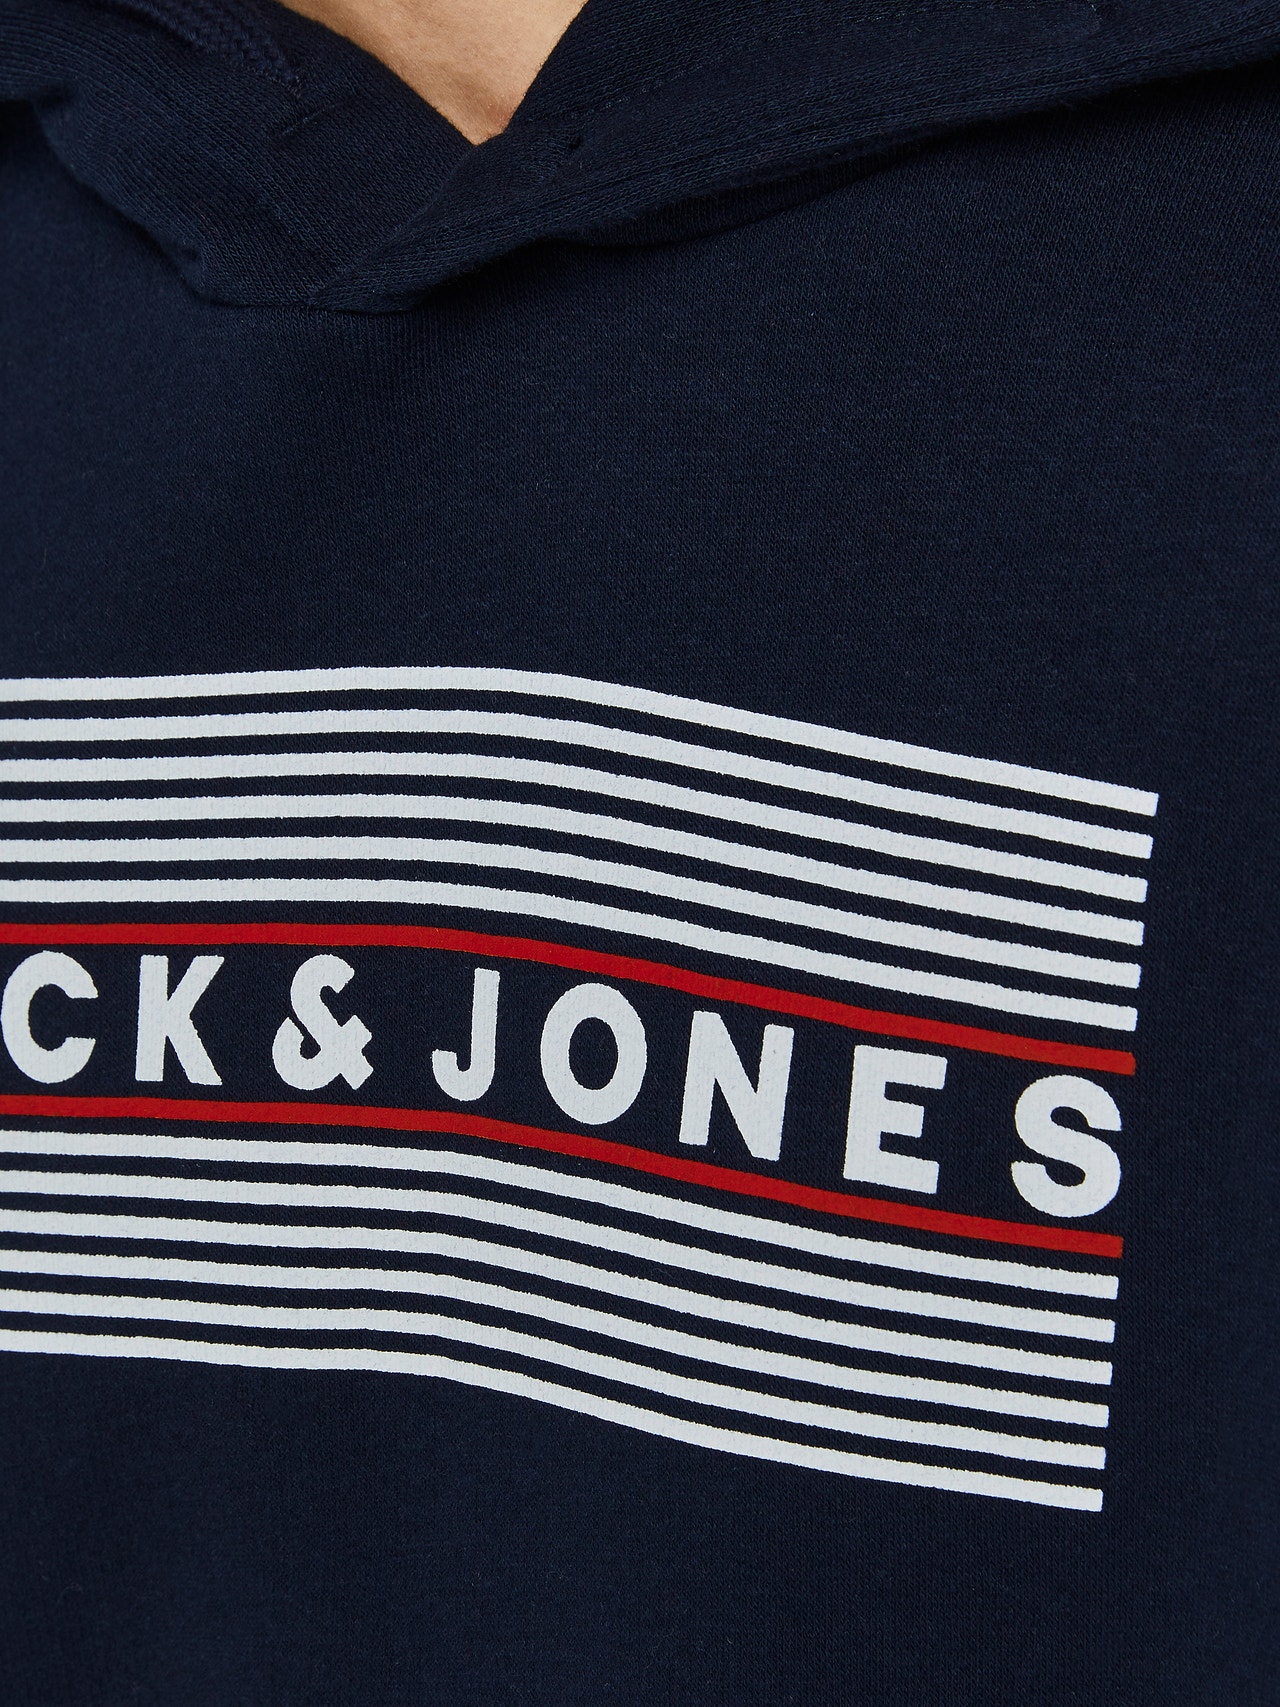 Jack & Jones Logo Hættetrøje Til drenge -Navy Blazer - 12152841